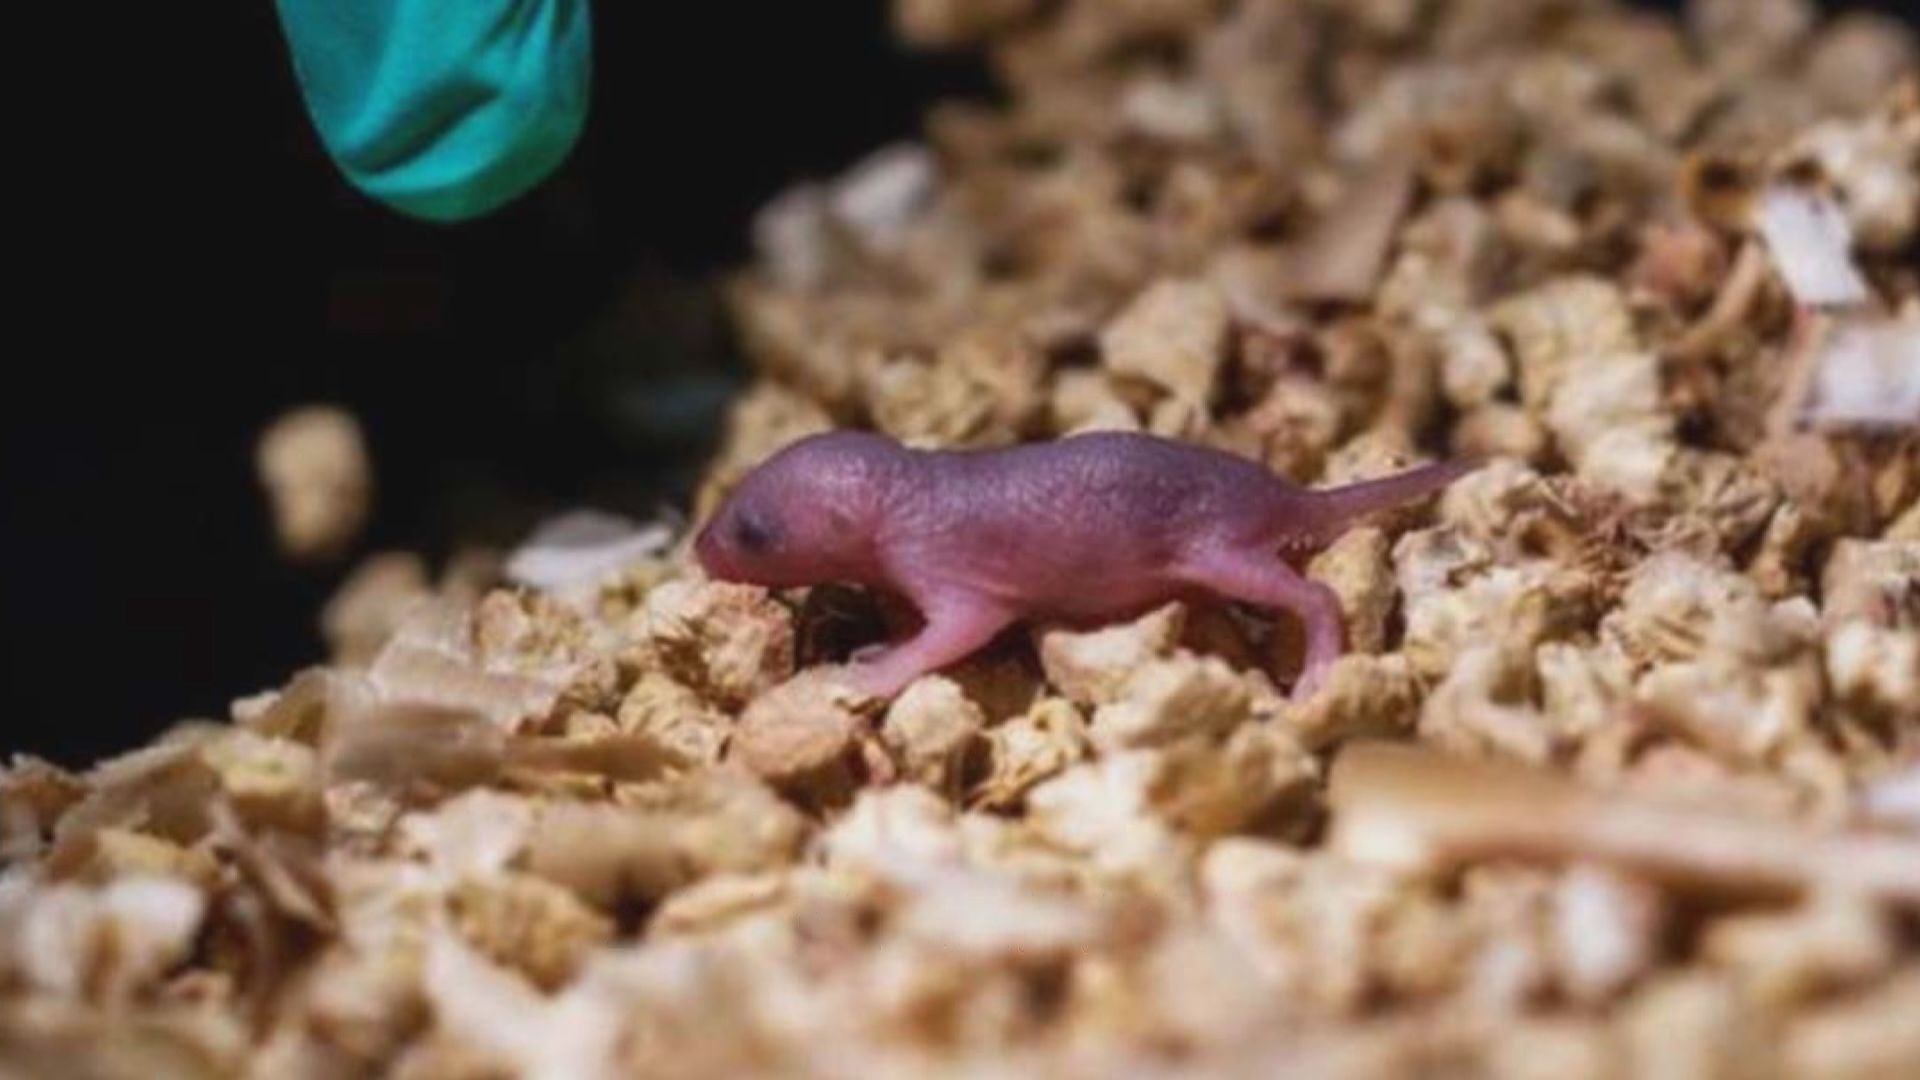 【環球薈報】科研人員成功以同性老鼠作繁殖